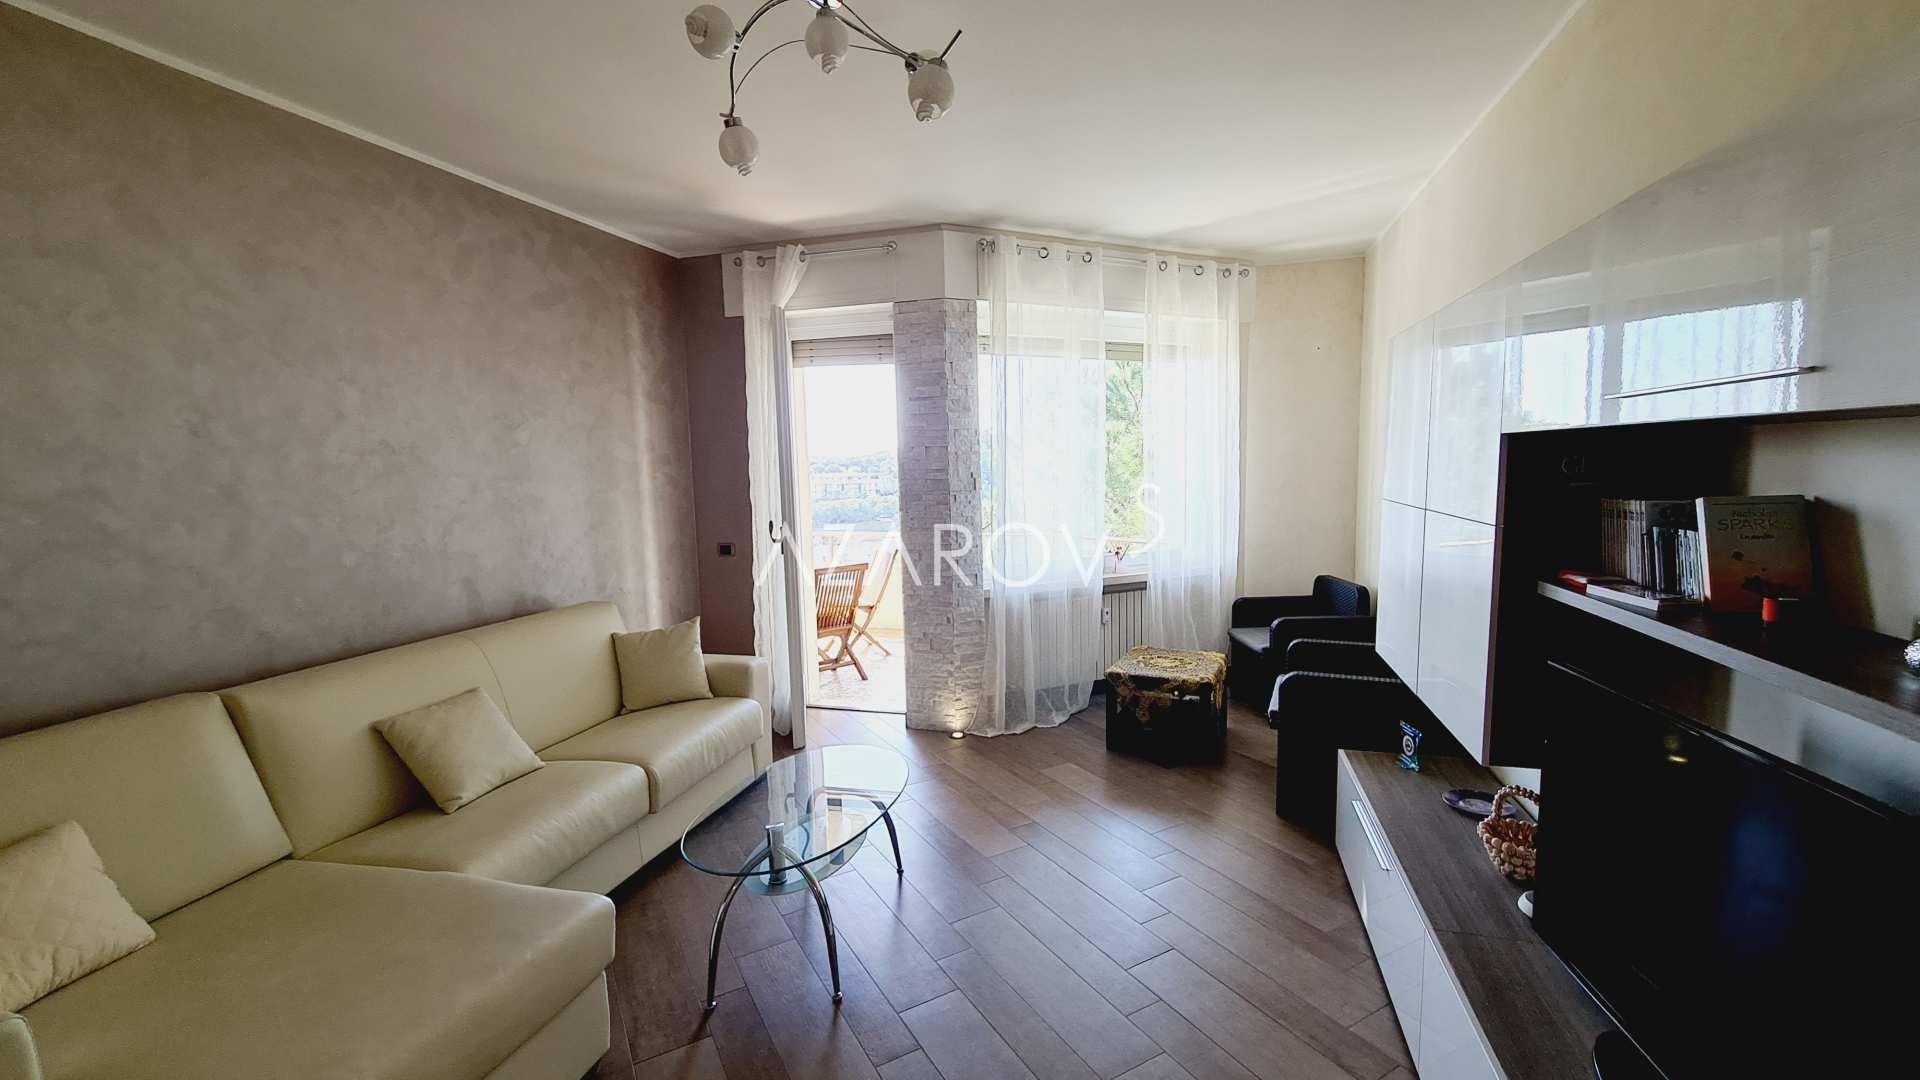 Appartement van 100 m2 in San Remo